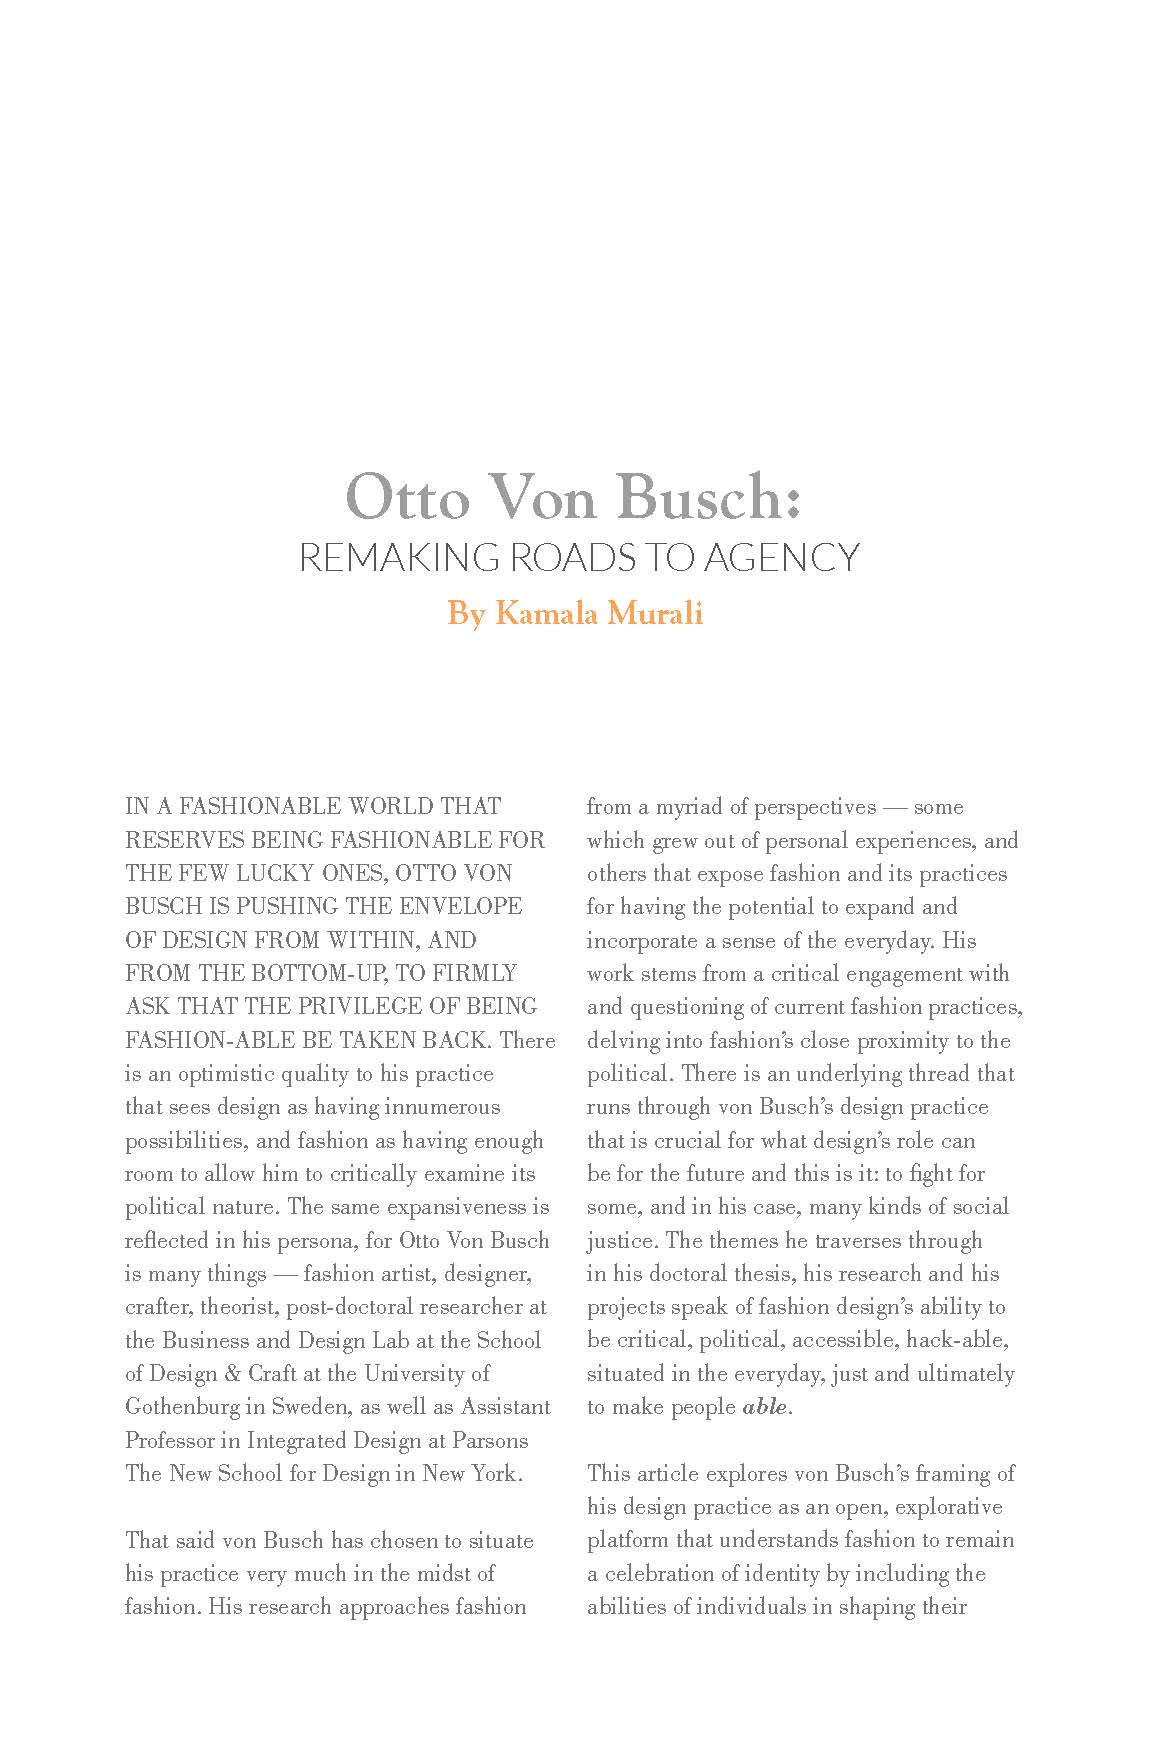 Otto Von Busch- REMAKING ROADS TO AGENCY_Page_1